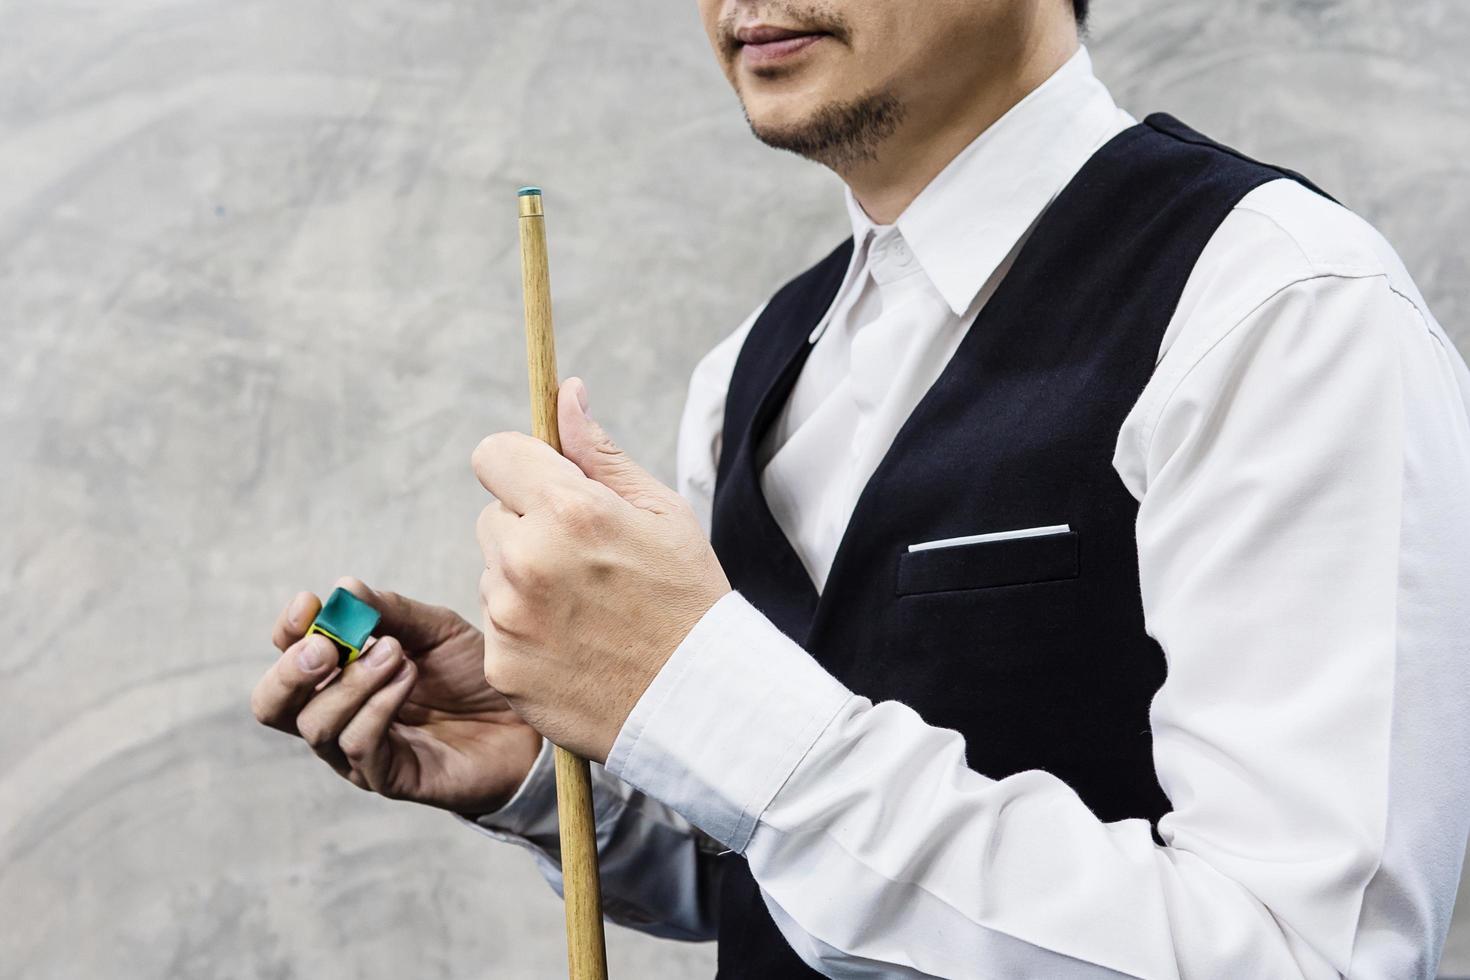 joueur de snooker debout attendant tenir son bâton de queue et sa craie se préparer pour son tour pendant le match de compétition photo